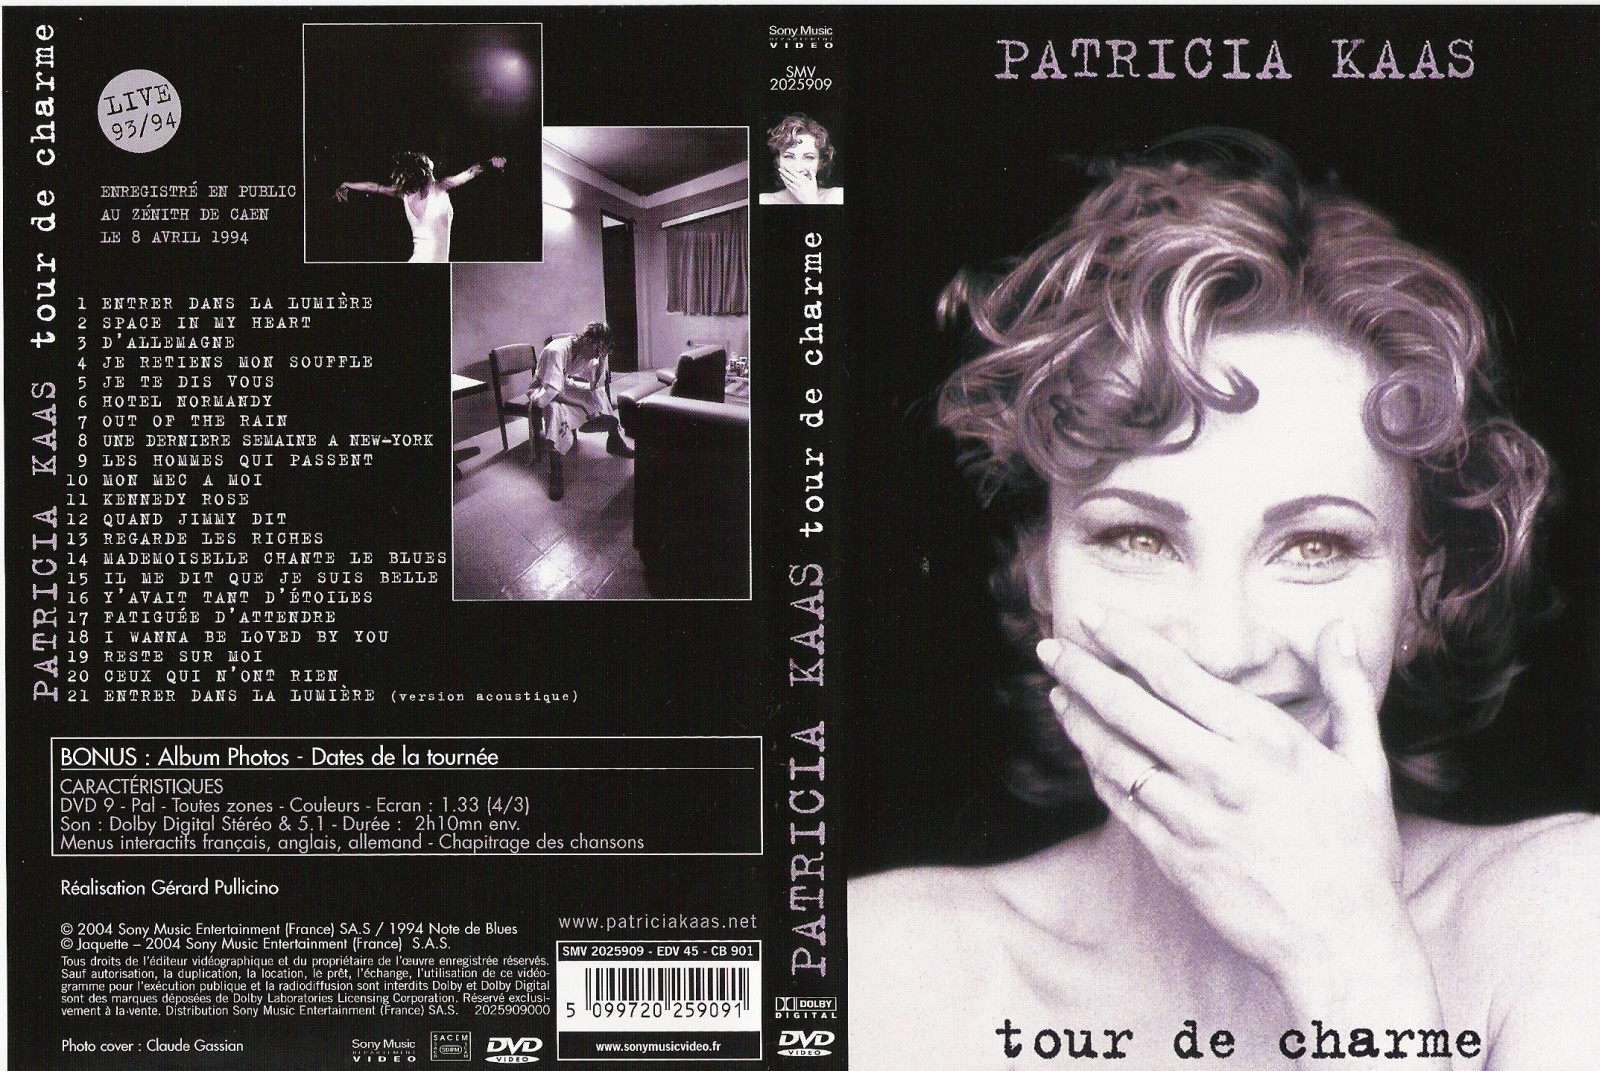 Jaquette DVD Patricia Kaas tour de charme